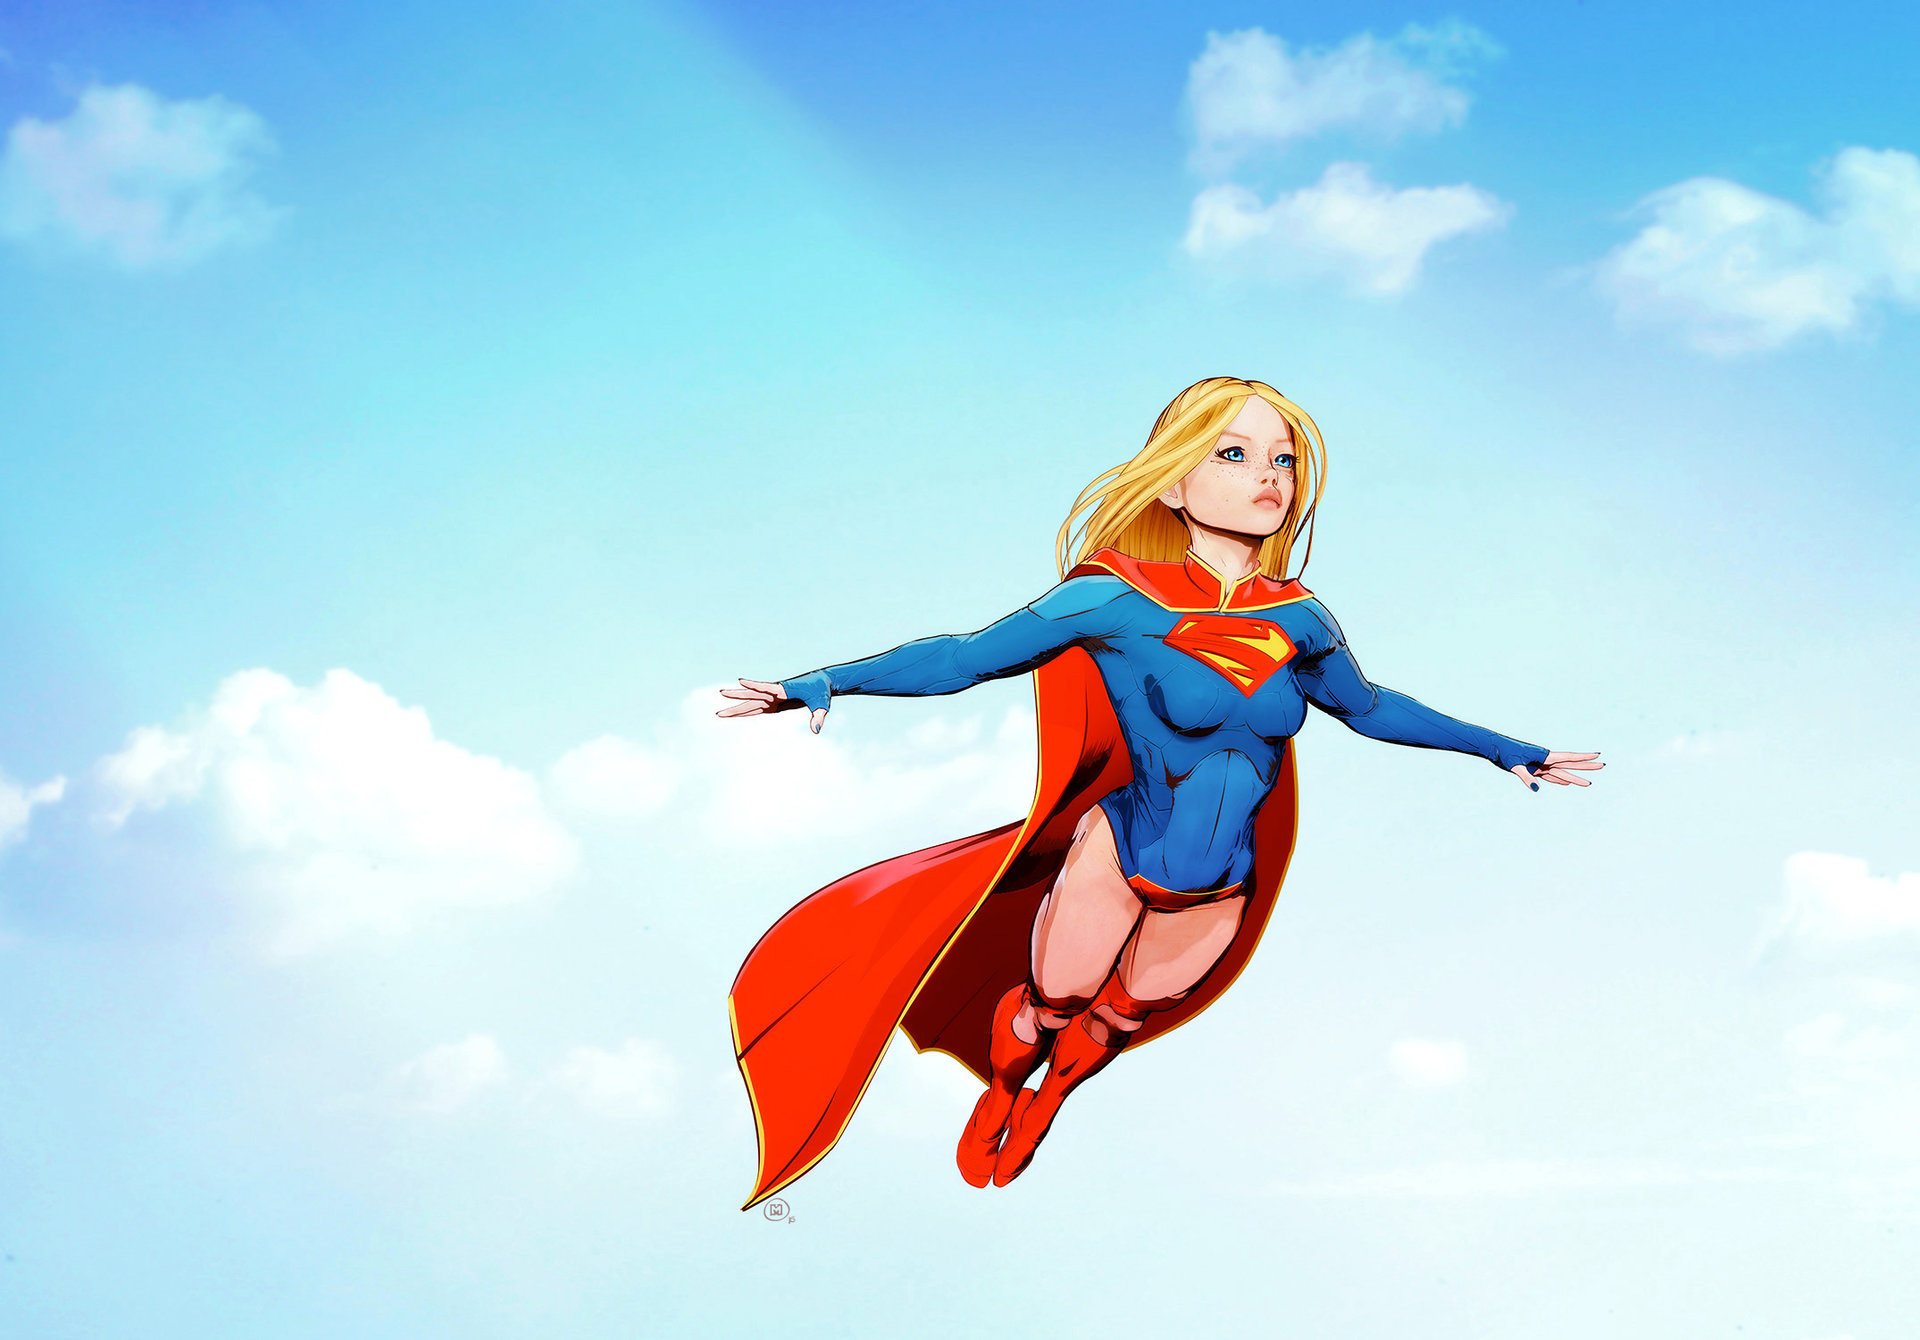 maxx b - Supergirl flying